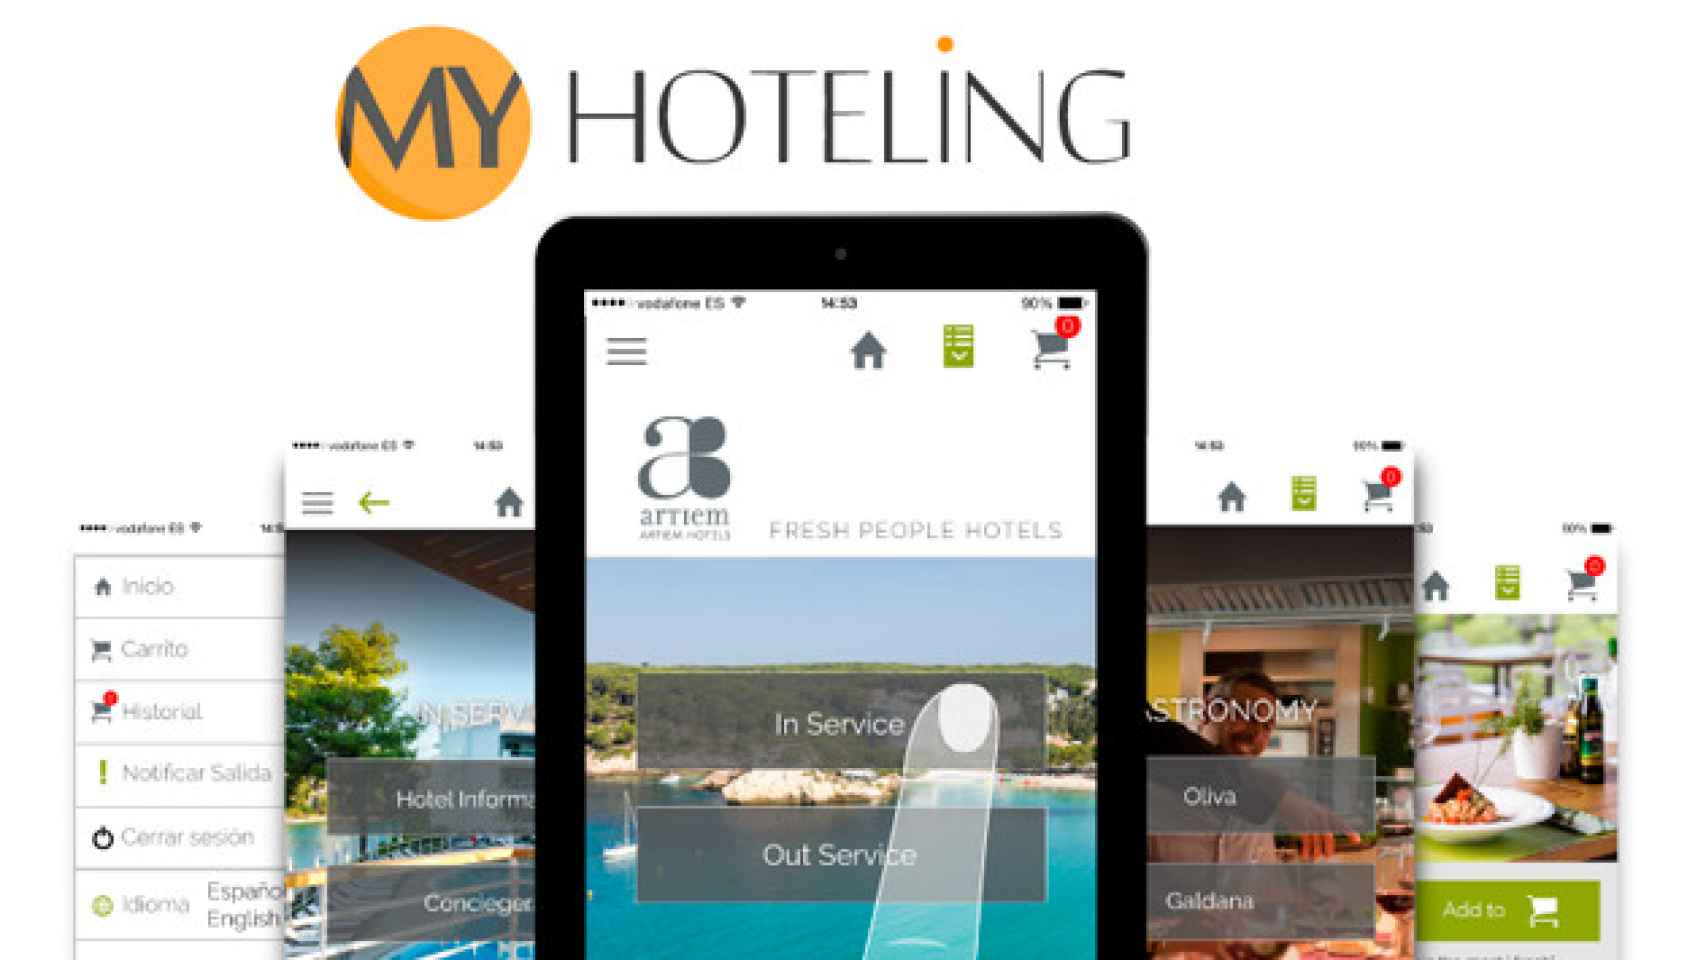 Imágenes de la app de Myhoteling Hospitality / CG